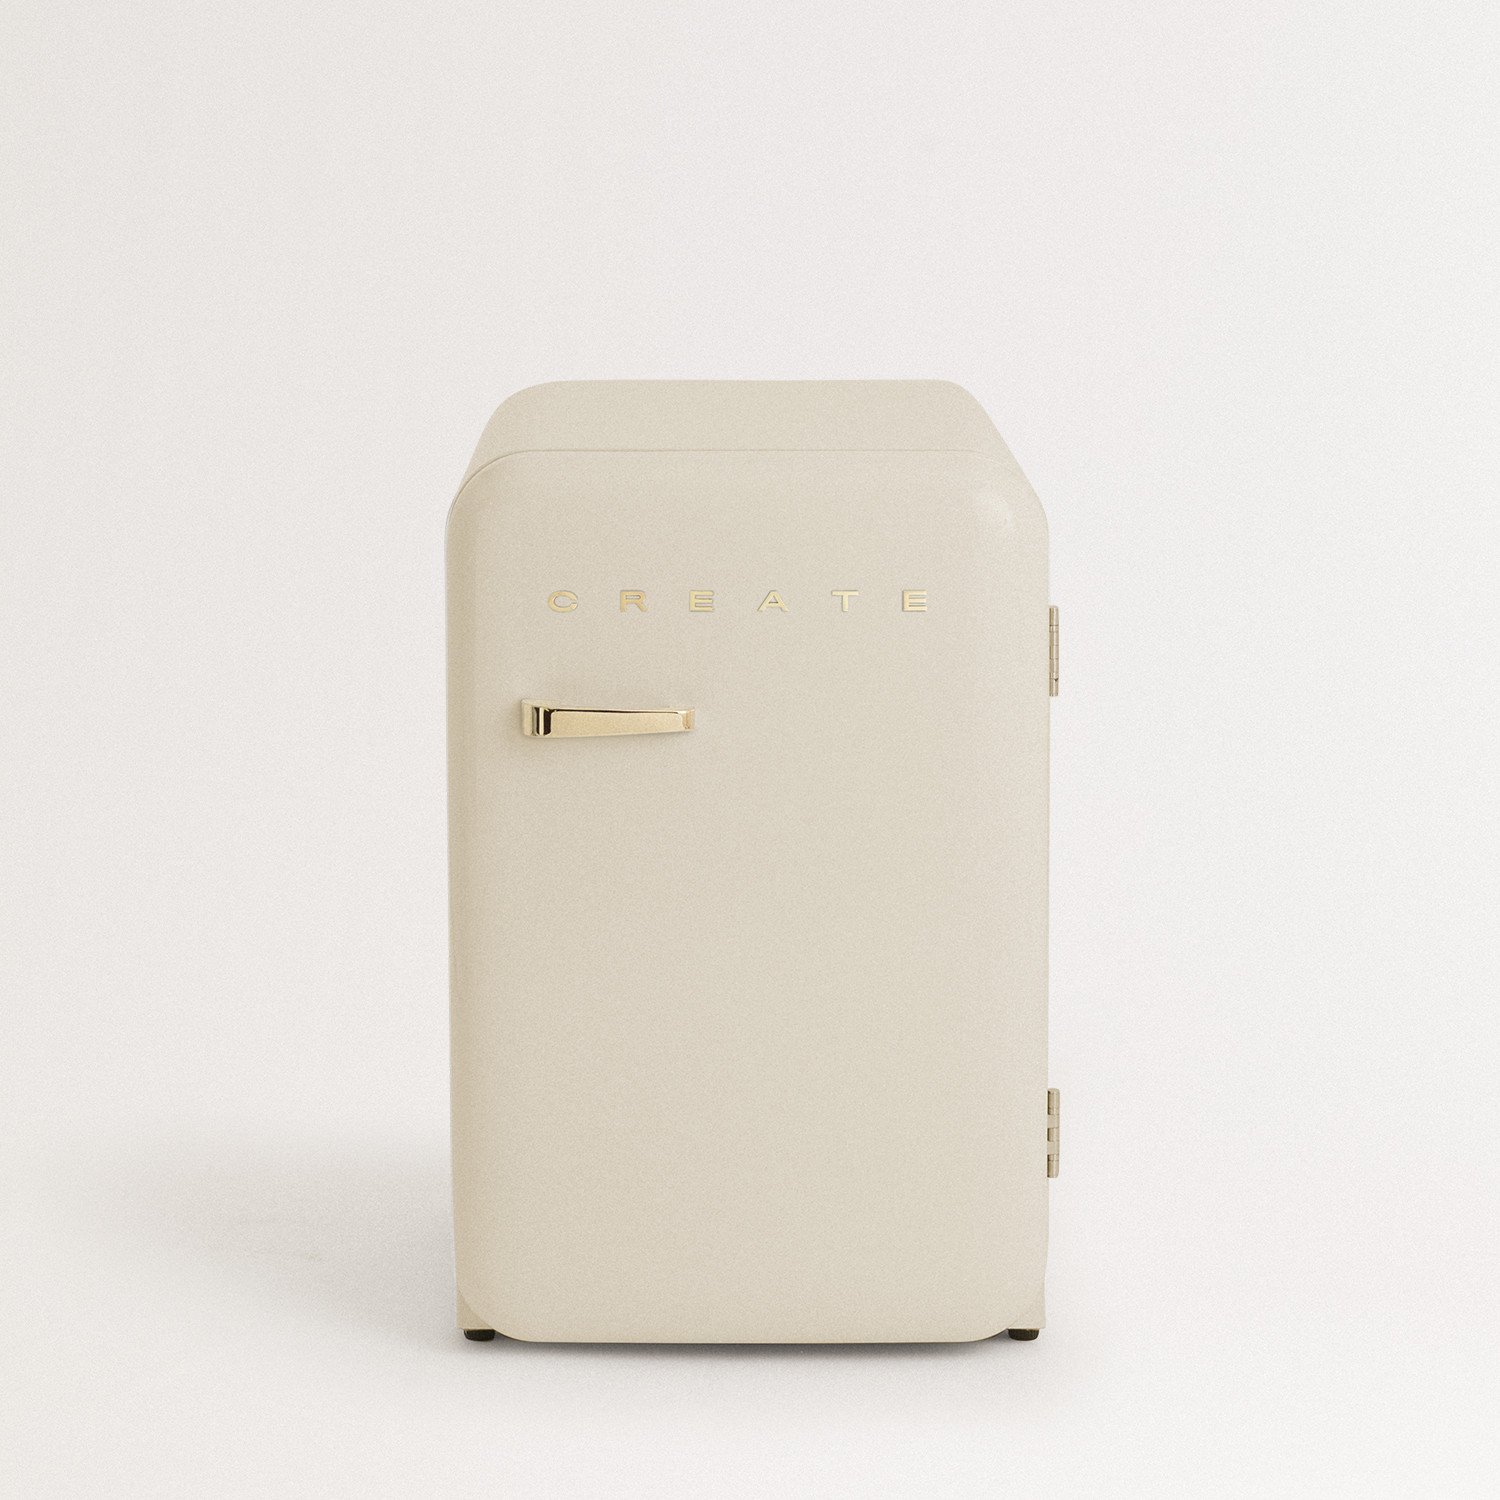 daar ben ik het mee eens Split Doorzichtig Mini koelkast goedkoop | Mini koelkast retro - Create